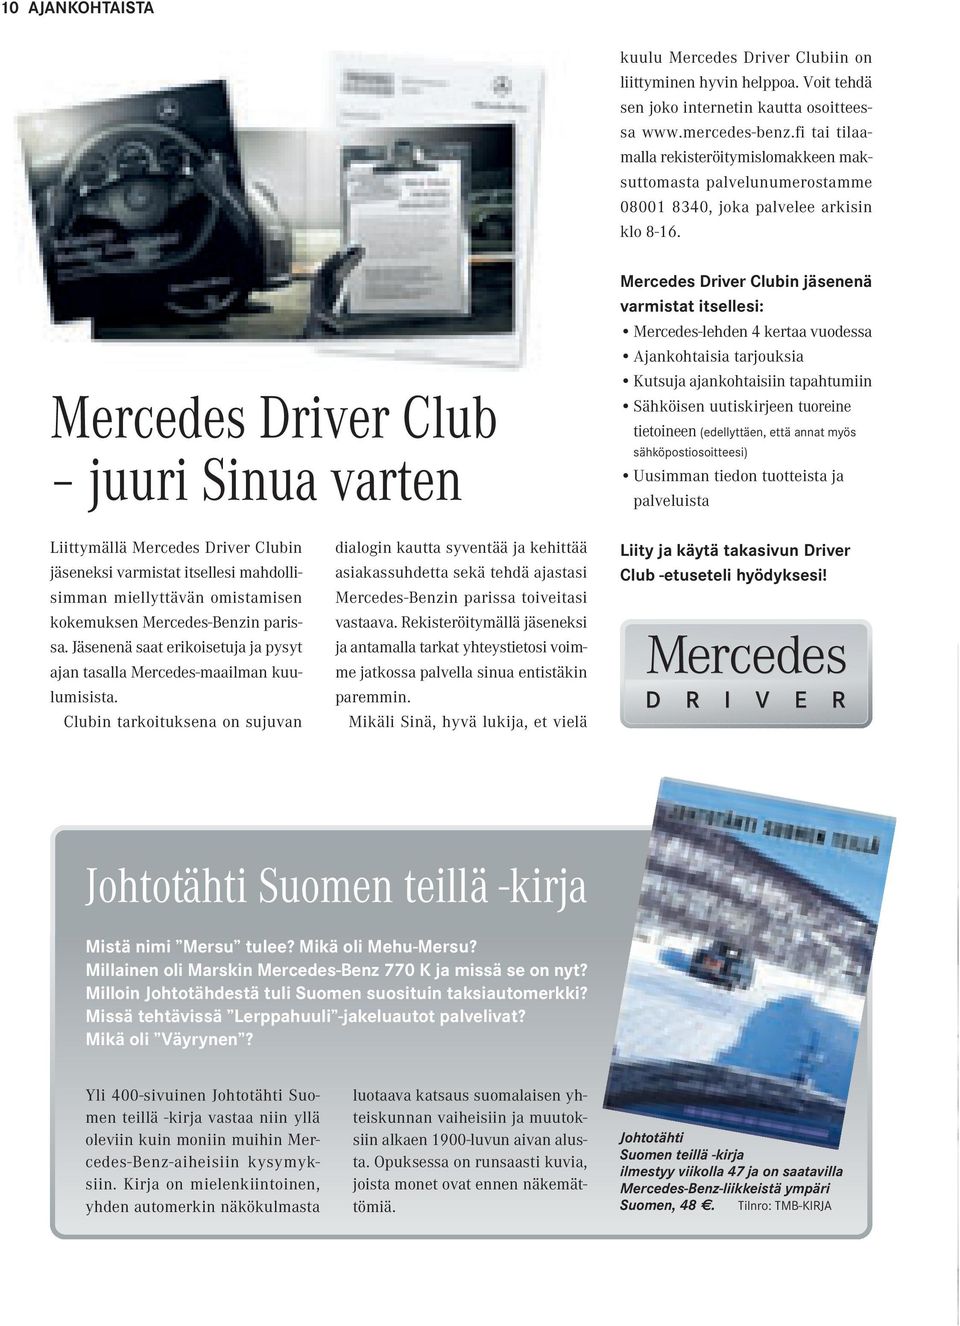 Mercedes Driver Club juuri Sinua varten Mercedes Driver Clubin jäsenenä varmistat itsellesi: Mercedes-lehden 4 kertaa vuodessa Ajankohtaisia tarjouksia Kutsuja ajankohtaisiin tapahtumiin Sähköisen